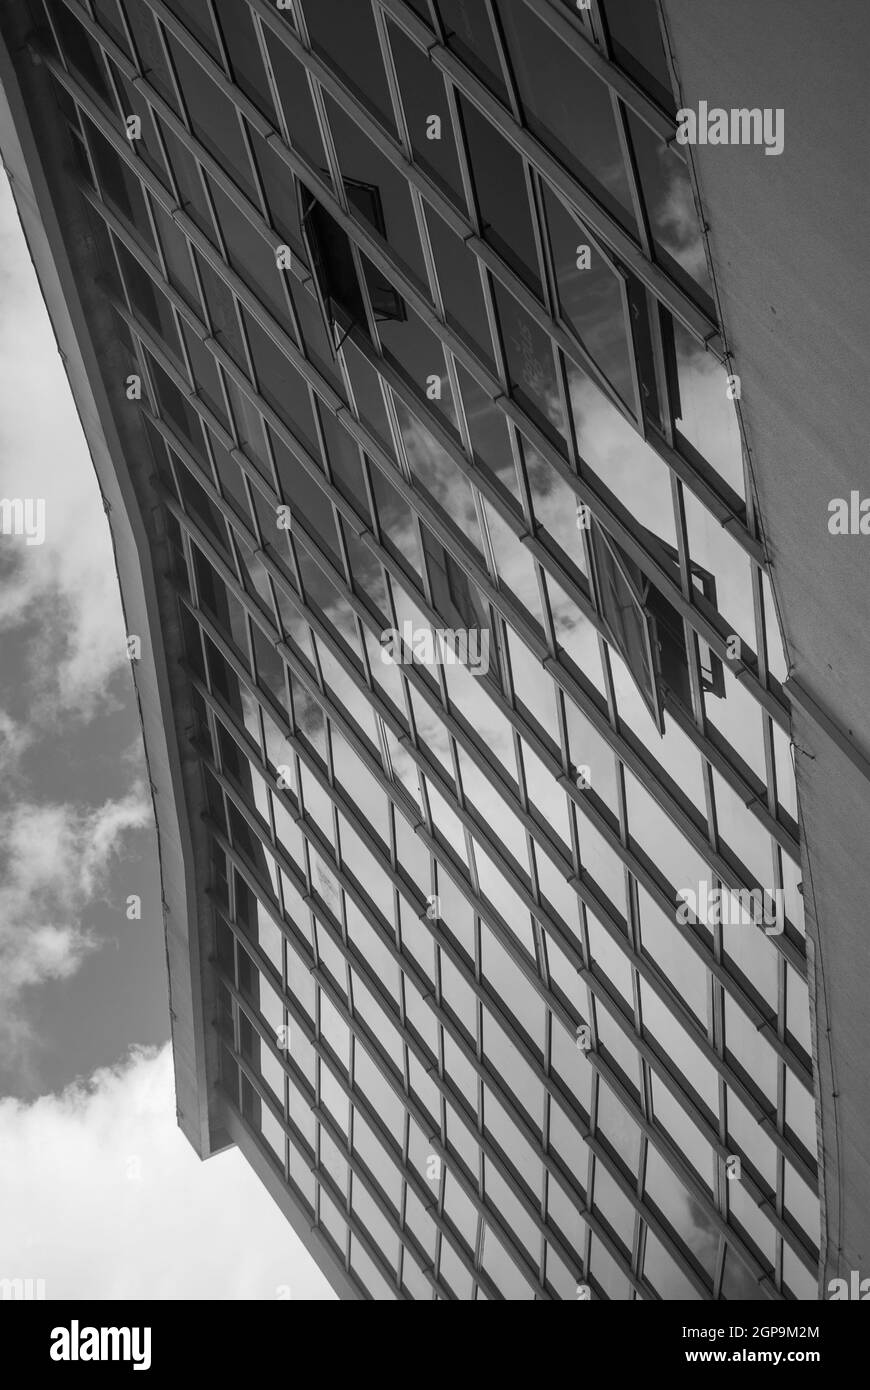 Architecture urbaine abstraite, reflet des nuages dans le ciel dans les fenêtres de l'édifice gratte-ciel couvert de verre, perspective brisée - Blac Banque D'Images